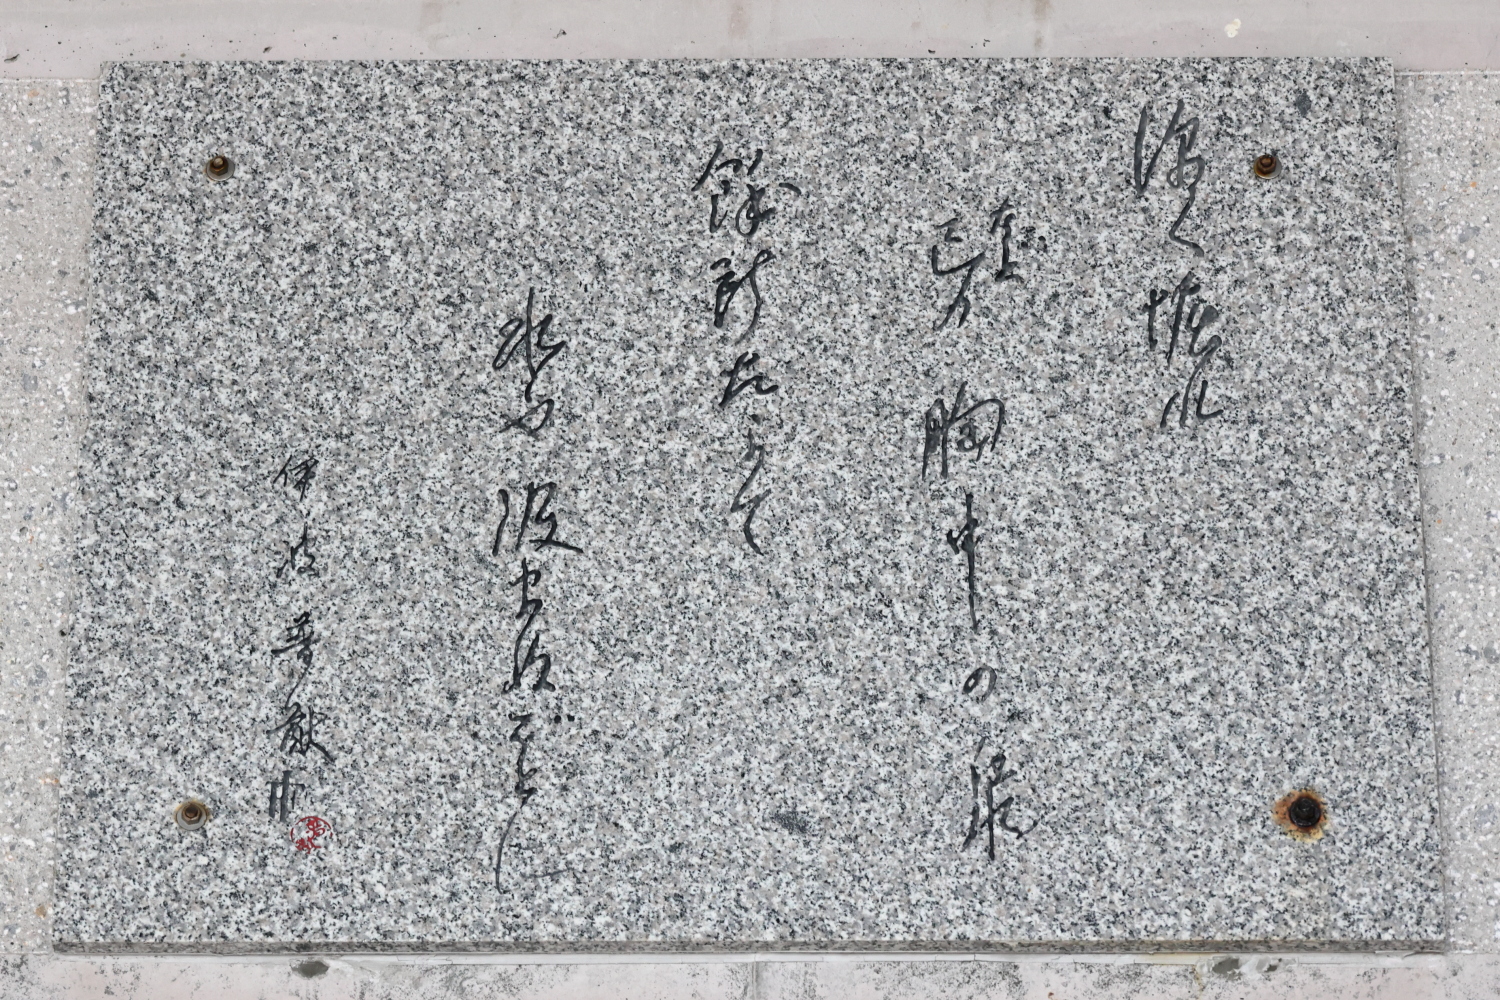 沖縄県立公文書館の入口に掲示されている「深く掘れ」の碑文